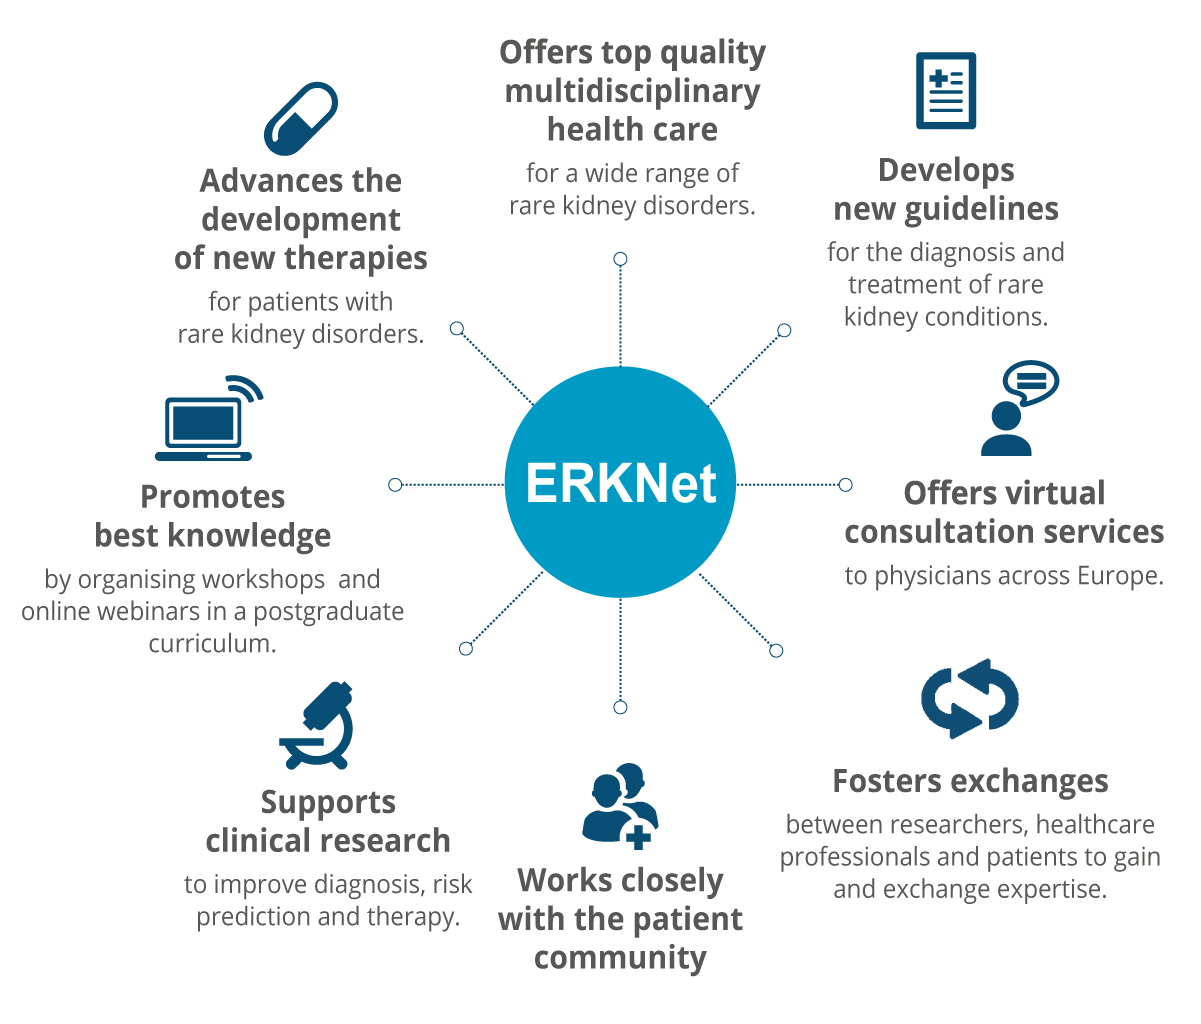 Activities of ERKNet